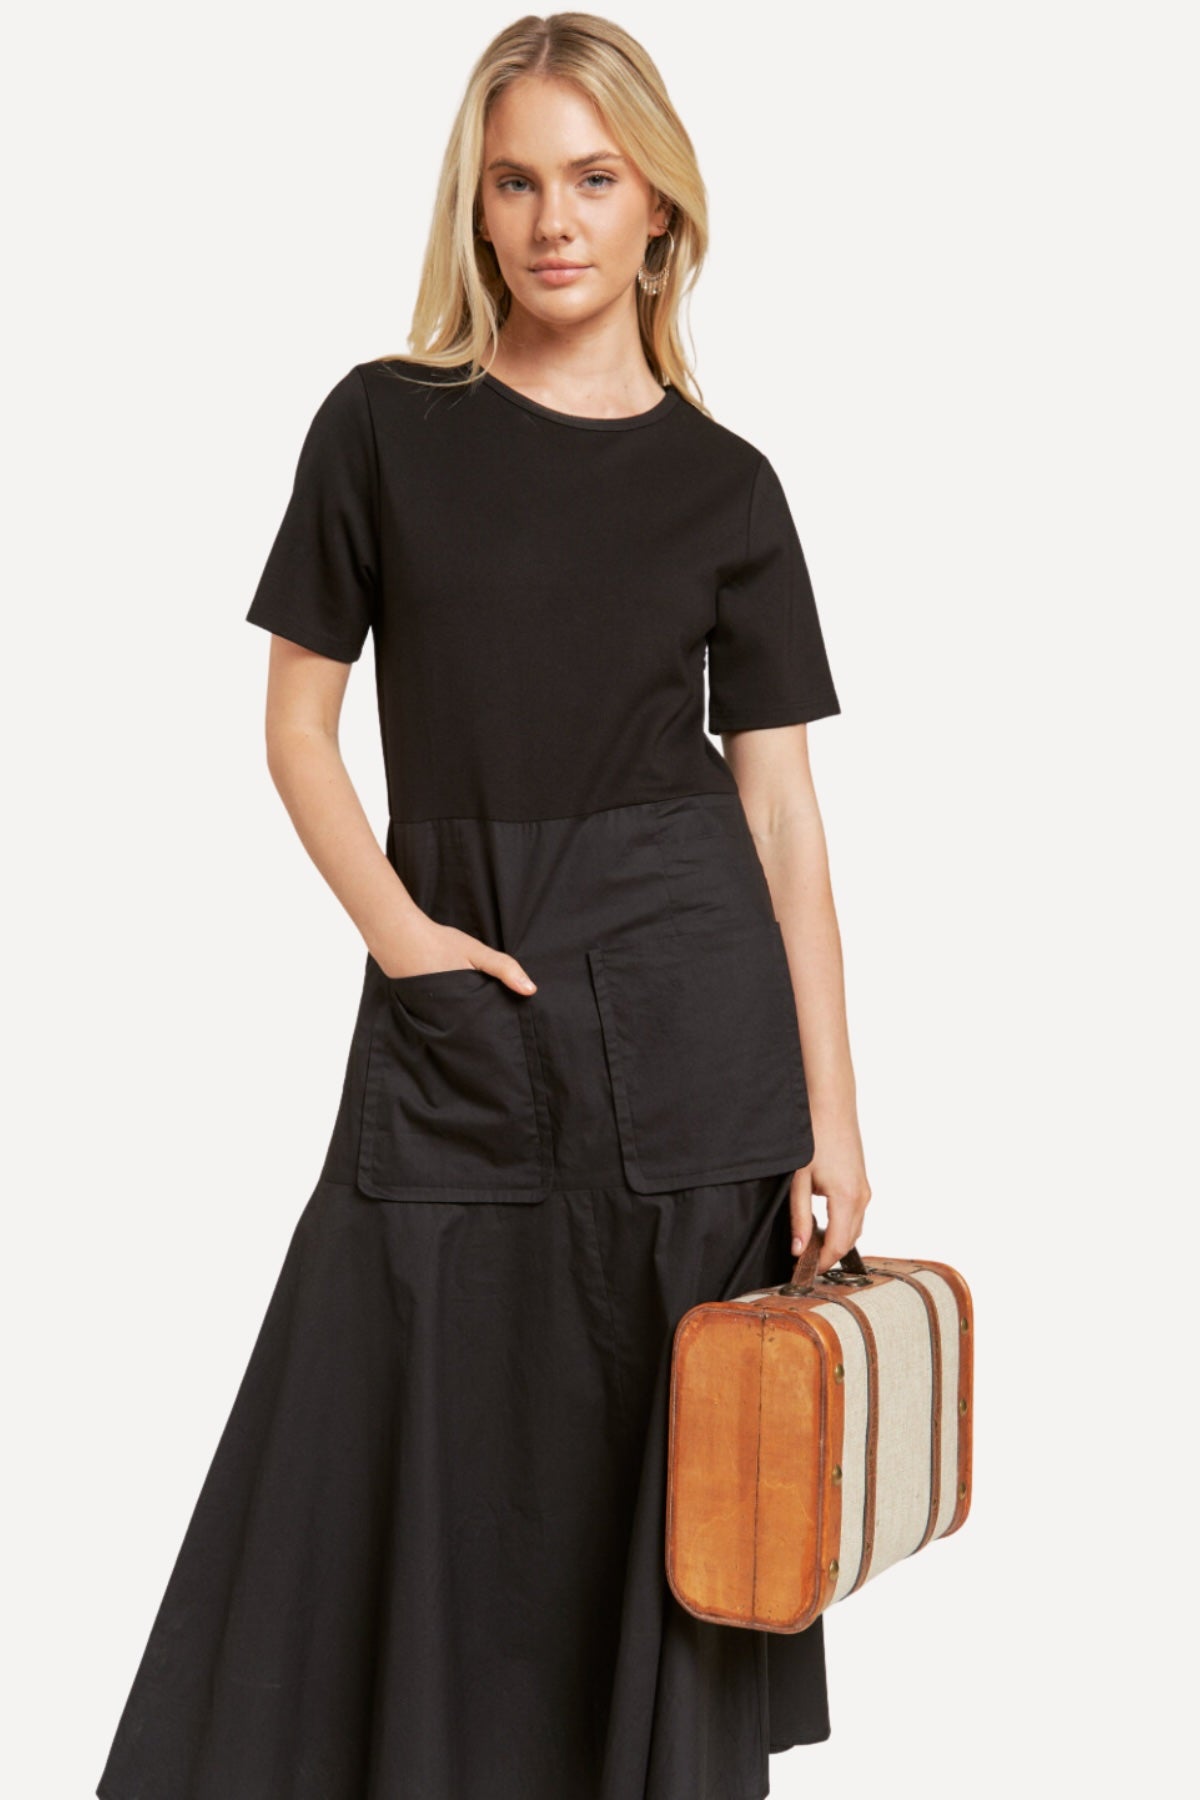 travel women dress, short sleeve black dress, The Traveler Maxi Dress women 